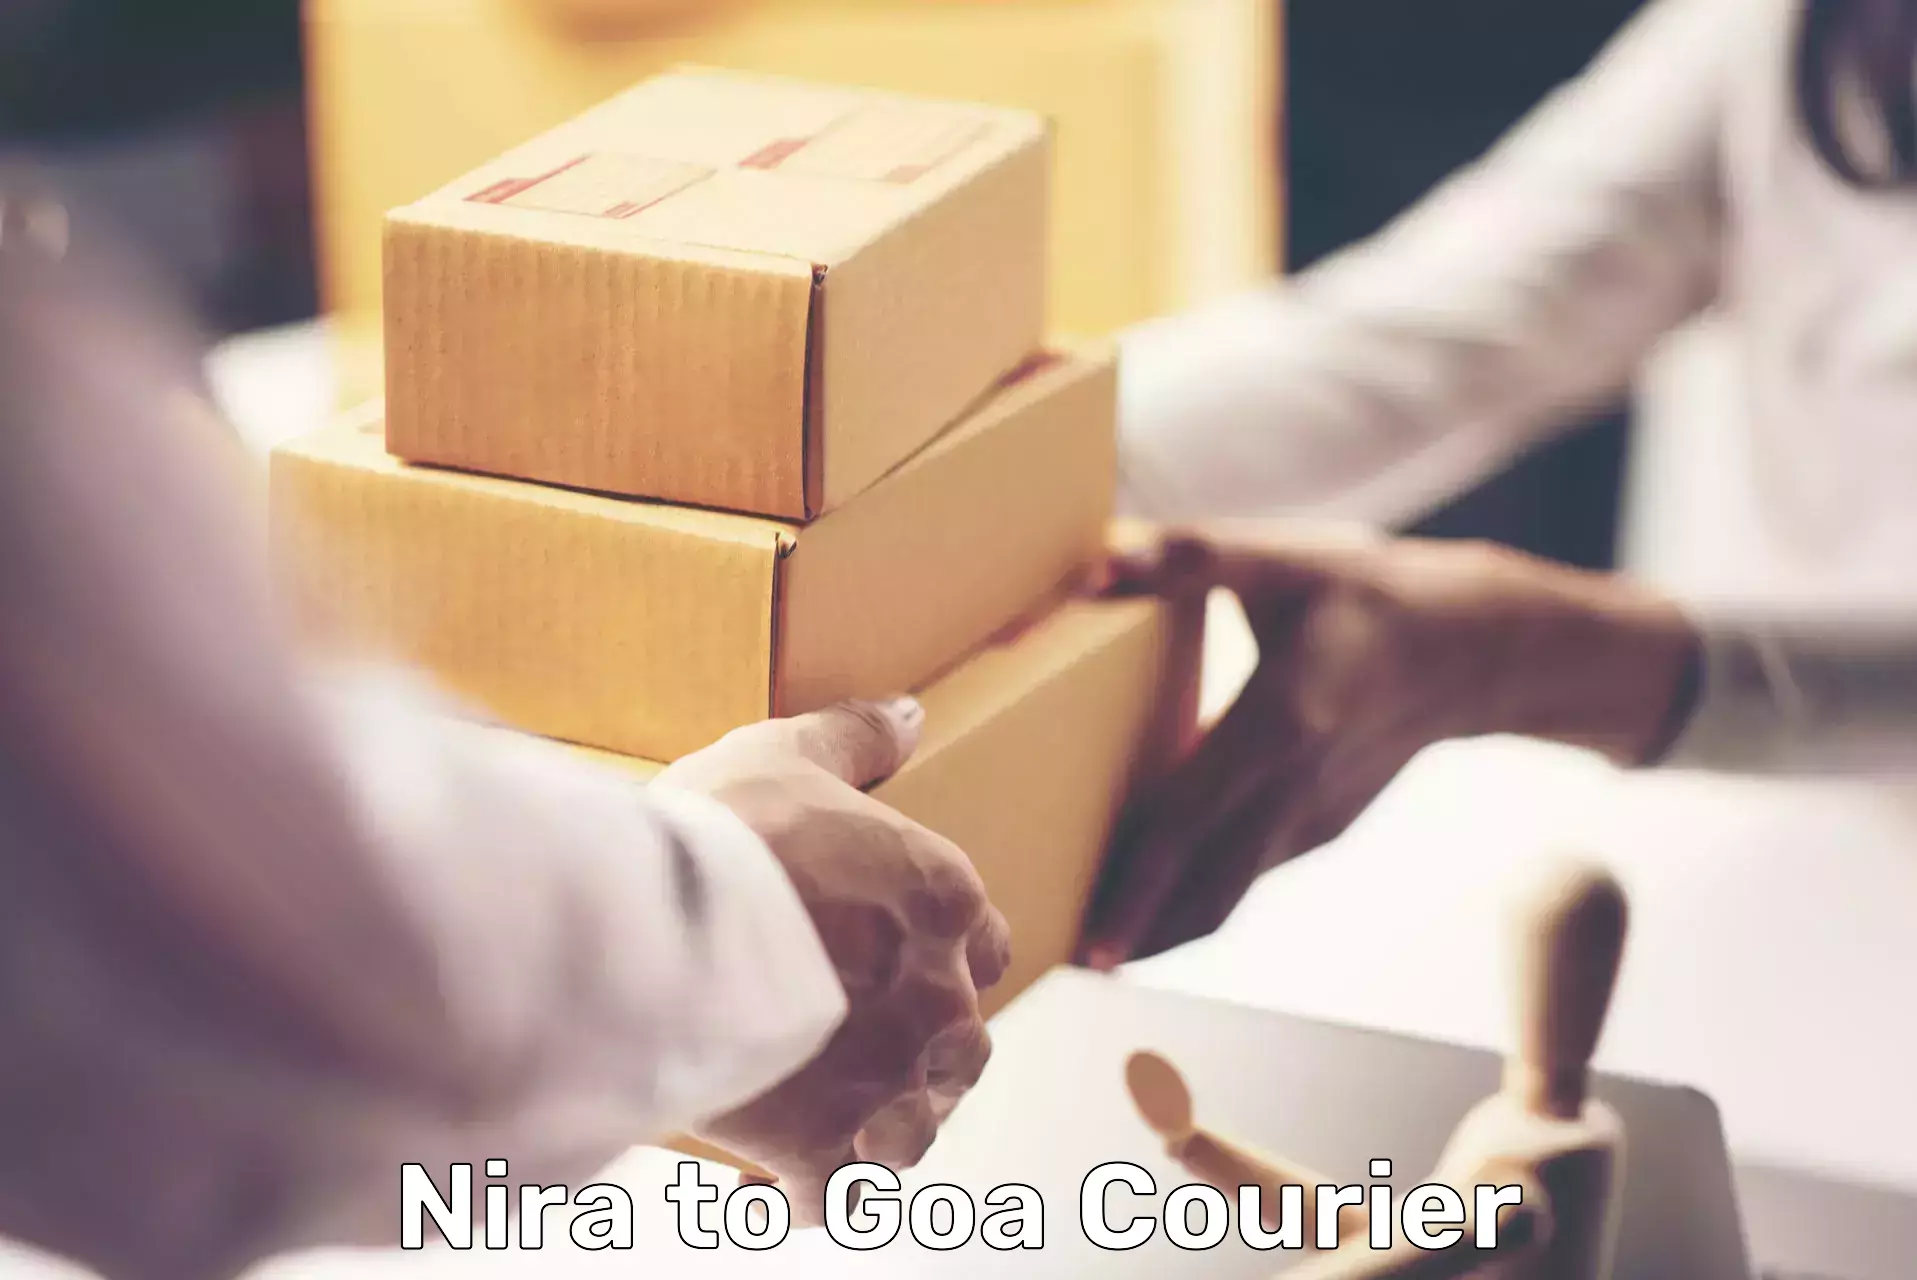 Express courier facilities Nira to Vasco da Gama